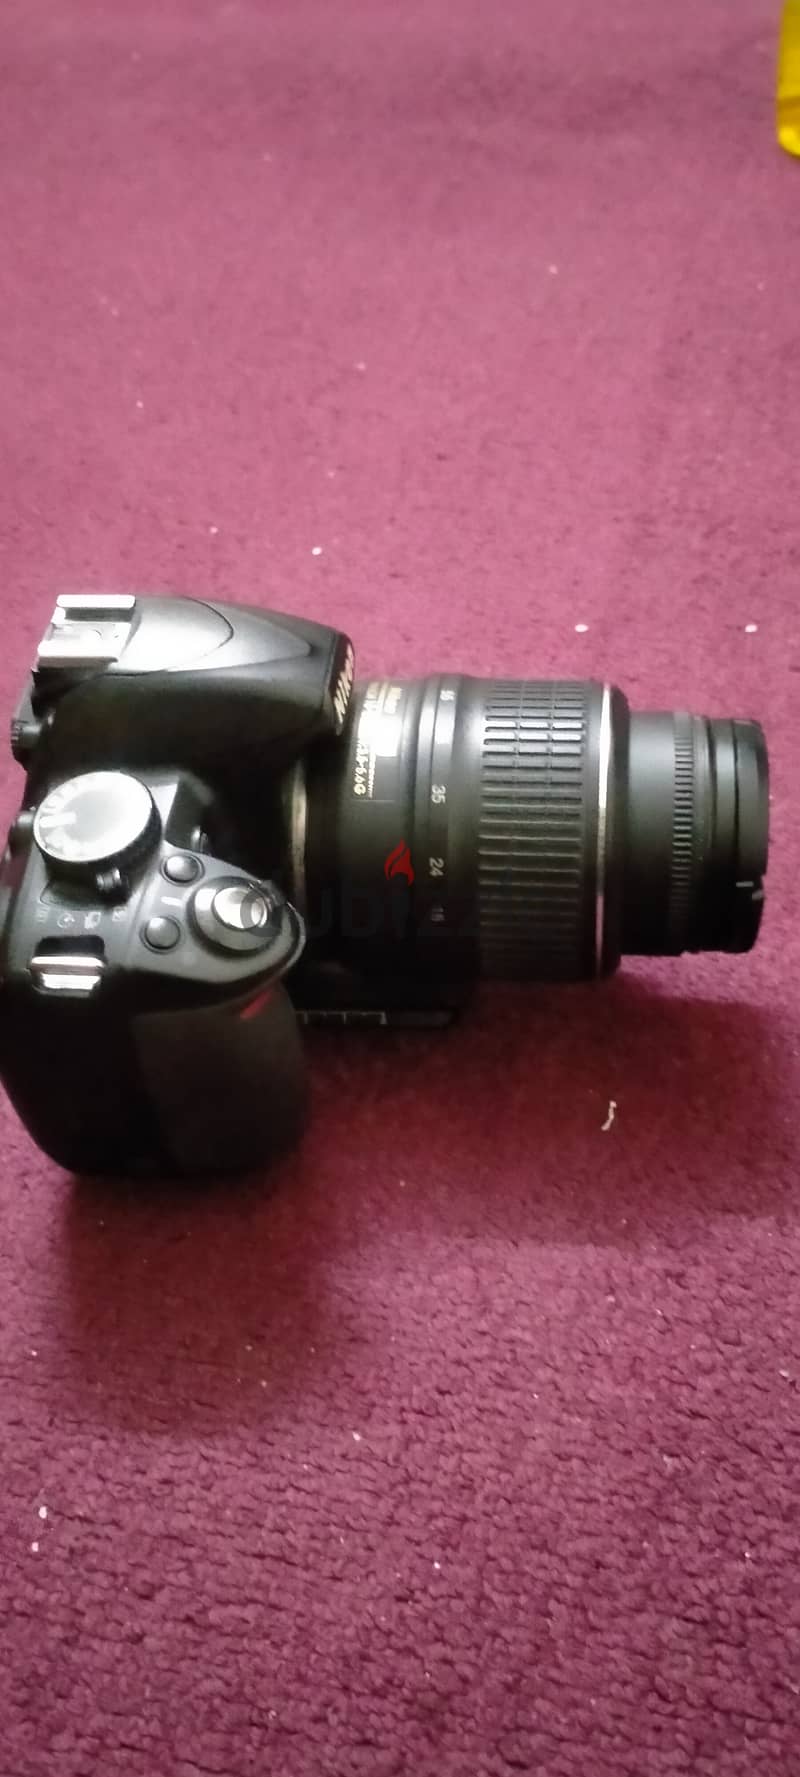 Nikkon camera for sale D3100 1